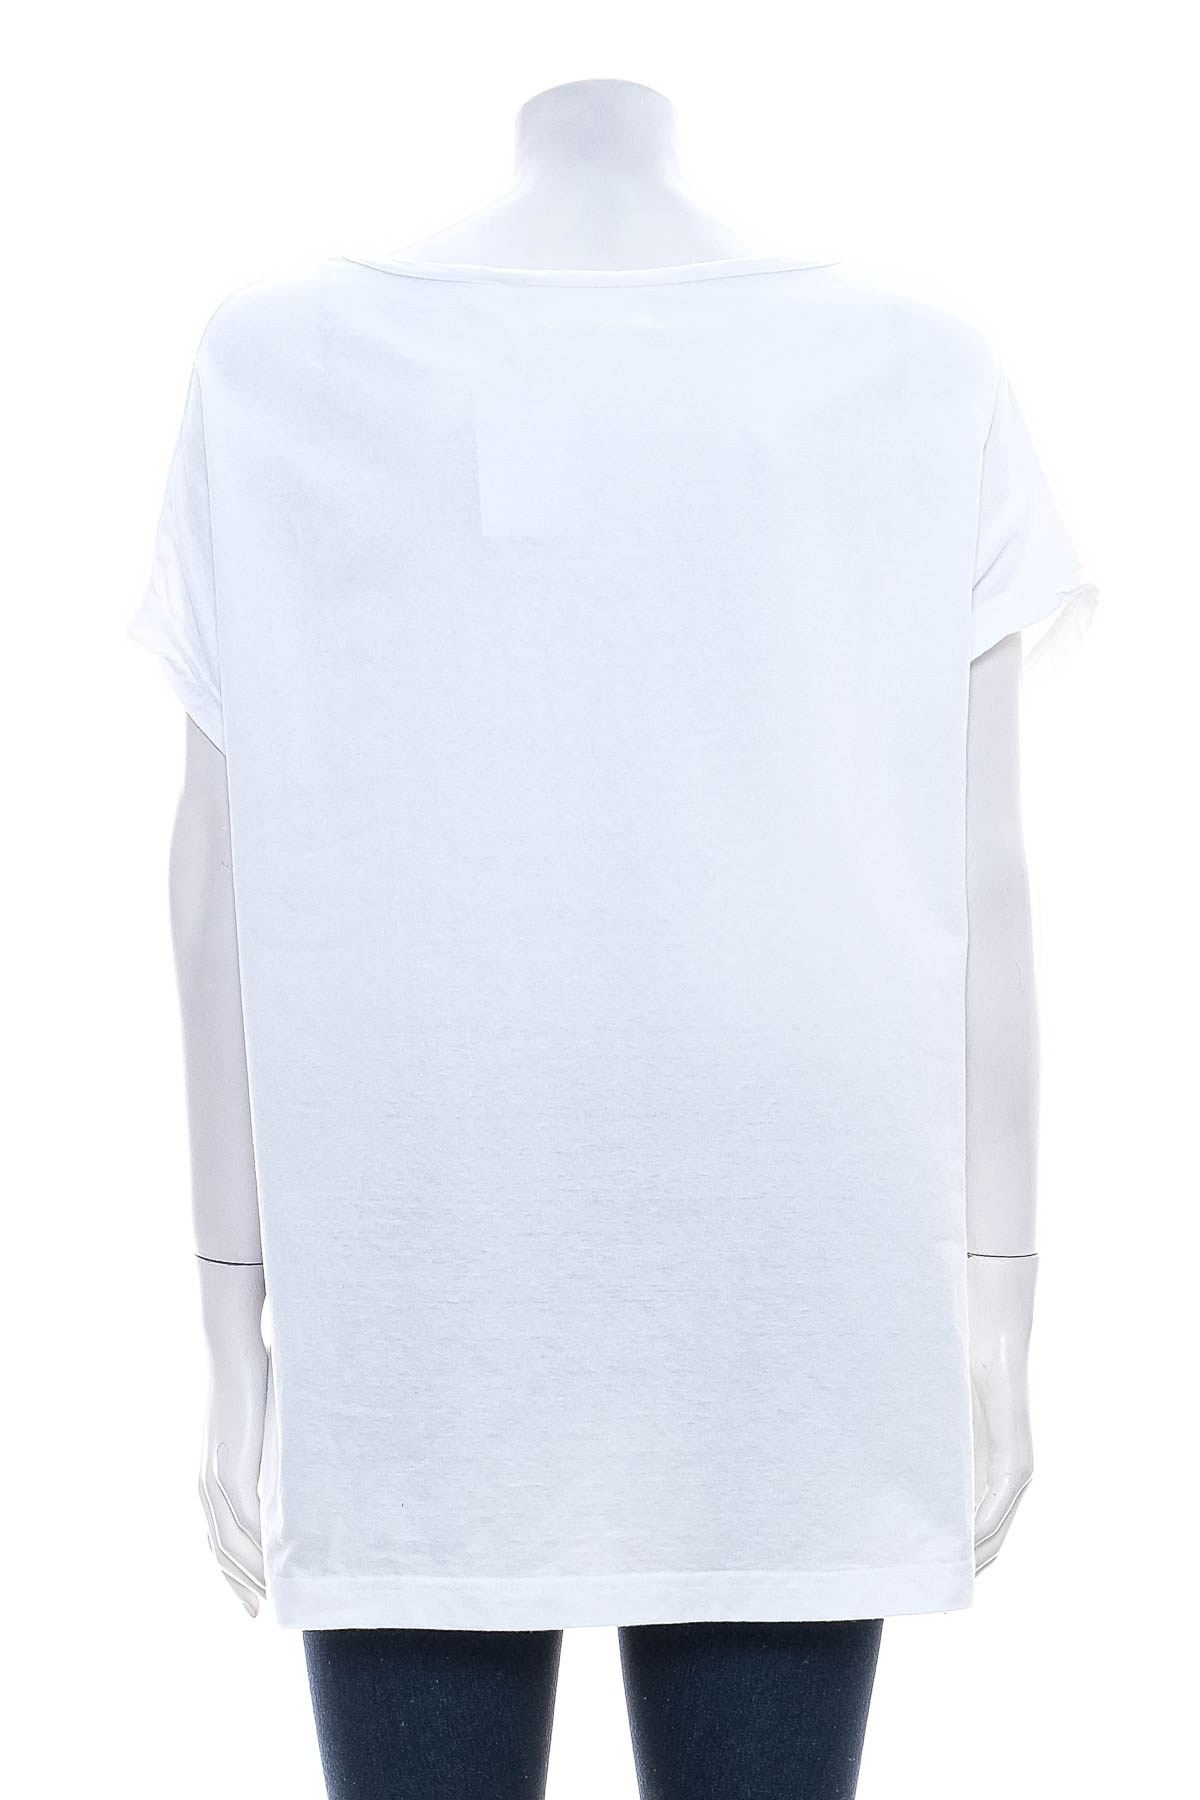 Γυναικεία μπλούζα - Bpc selection bonprix collection - 1